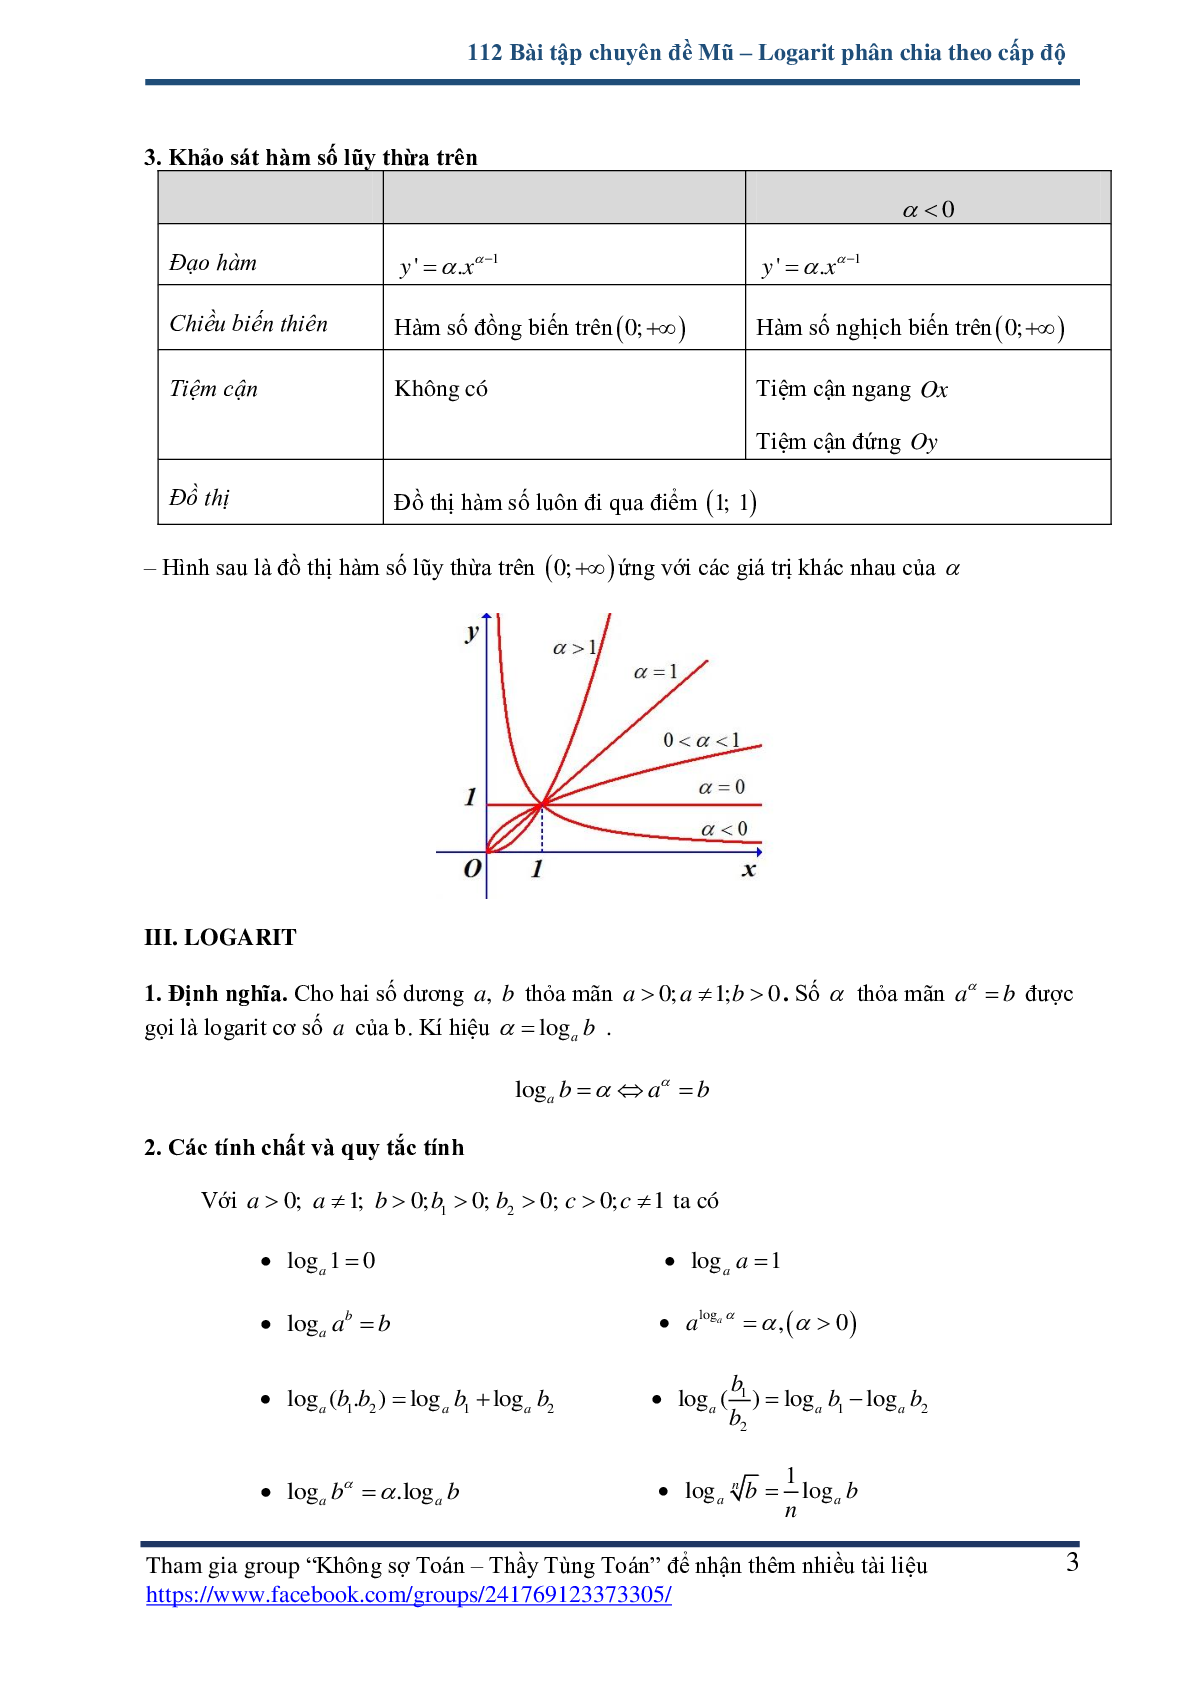 112 bài tập chuyên đề mũ và logarit - có lời giải chi tiết (trang 3)